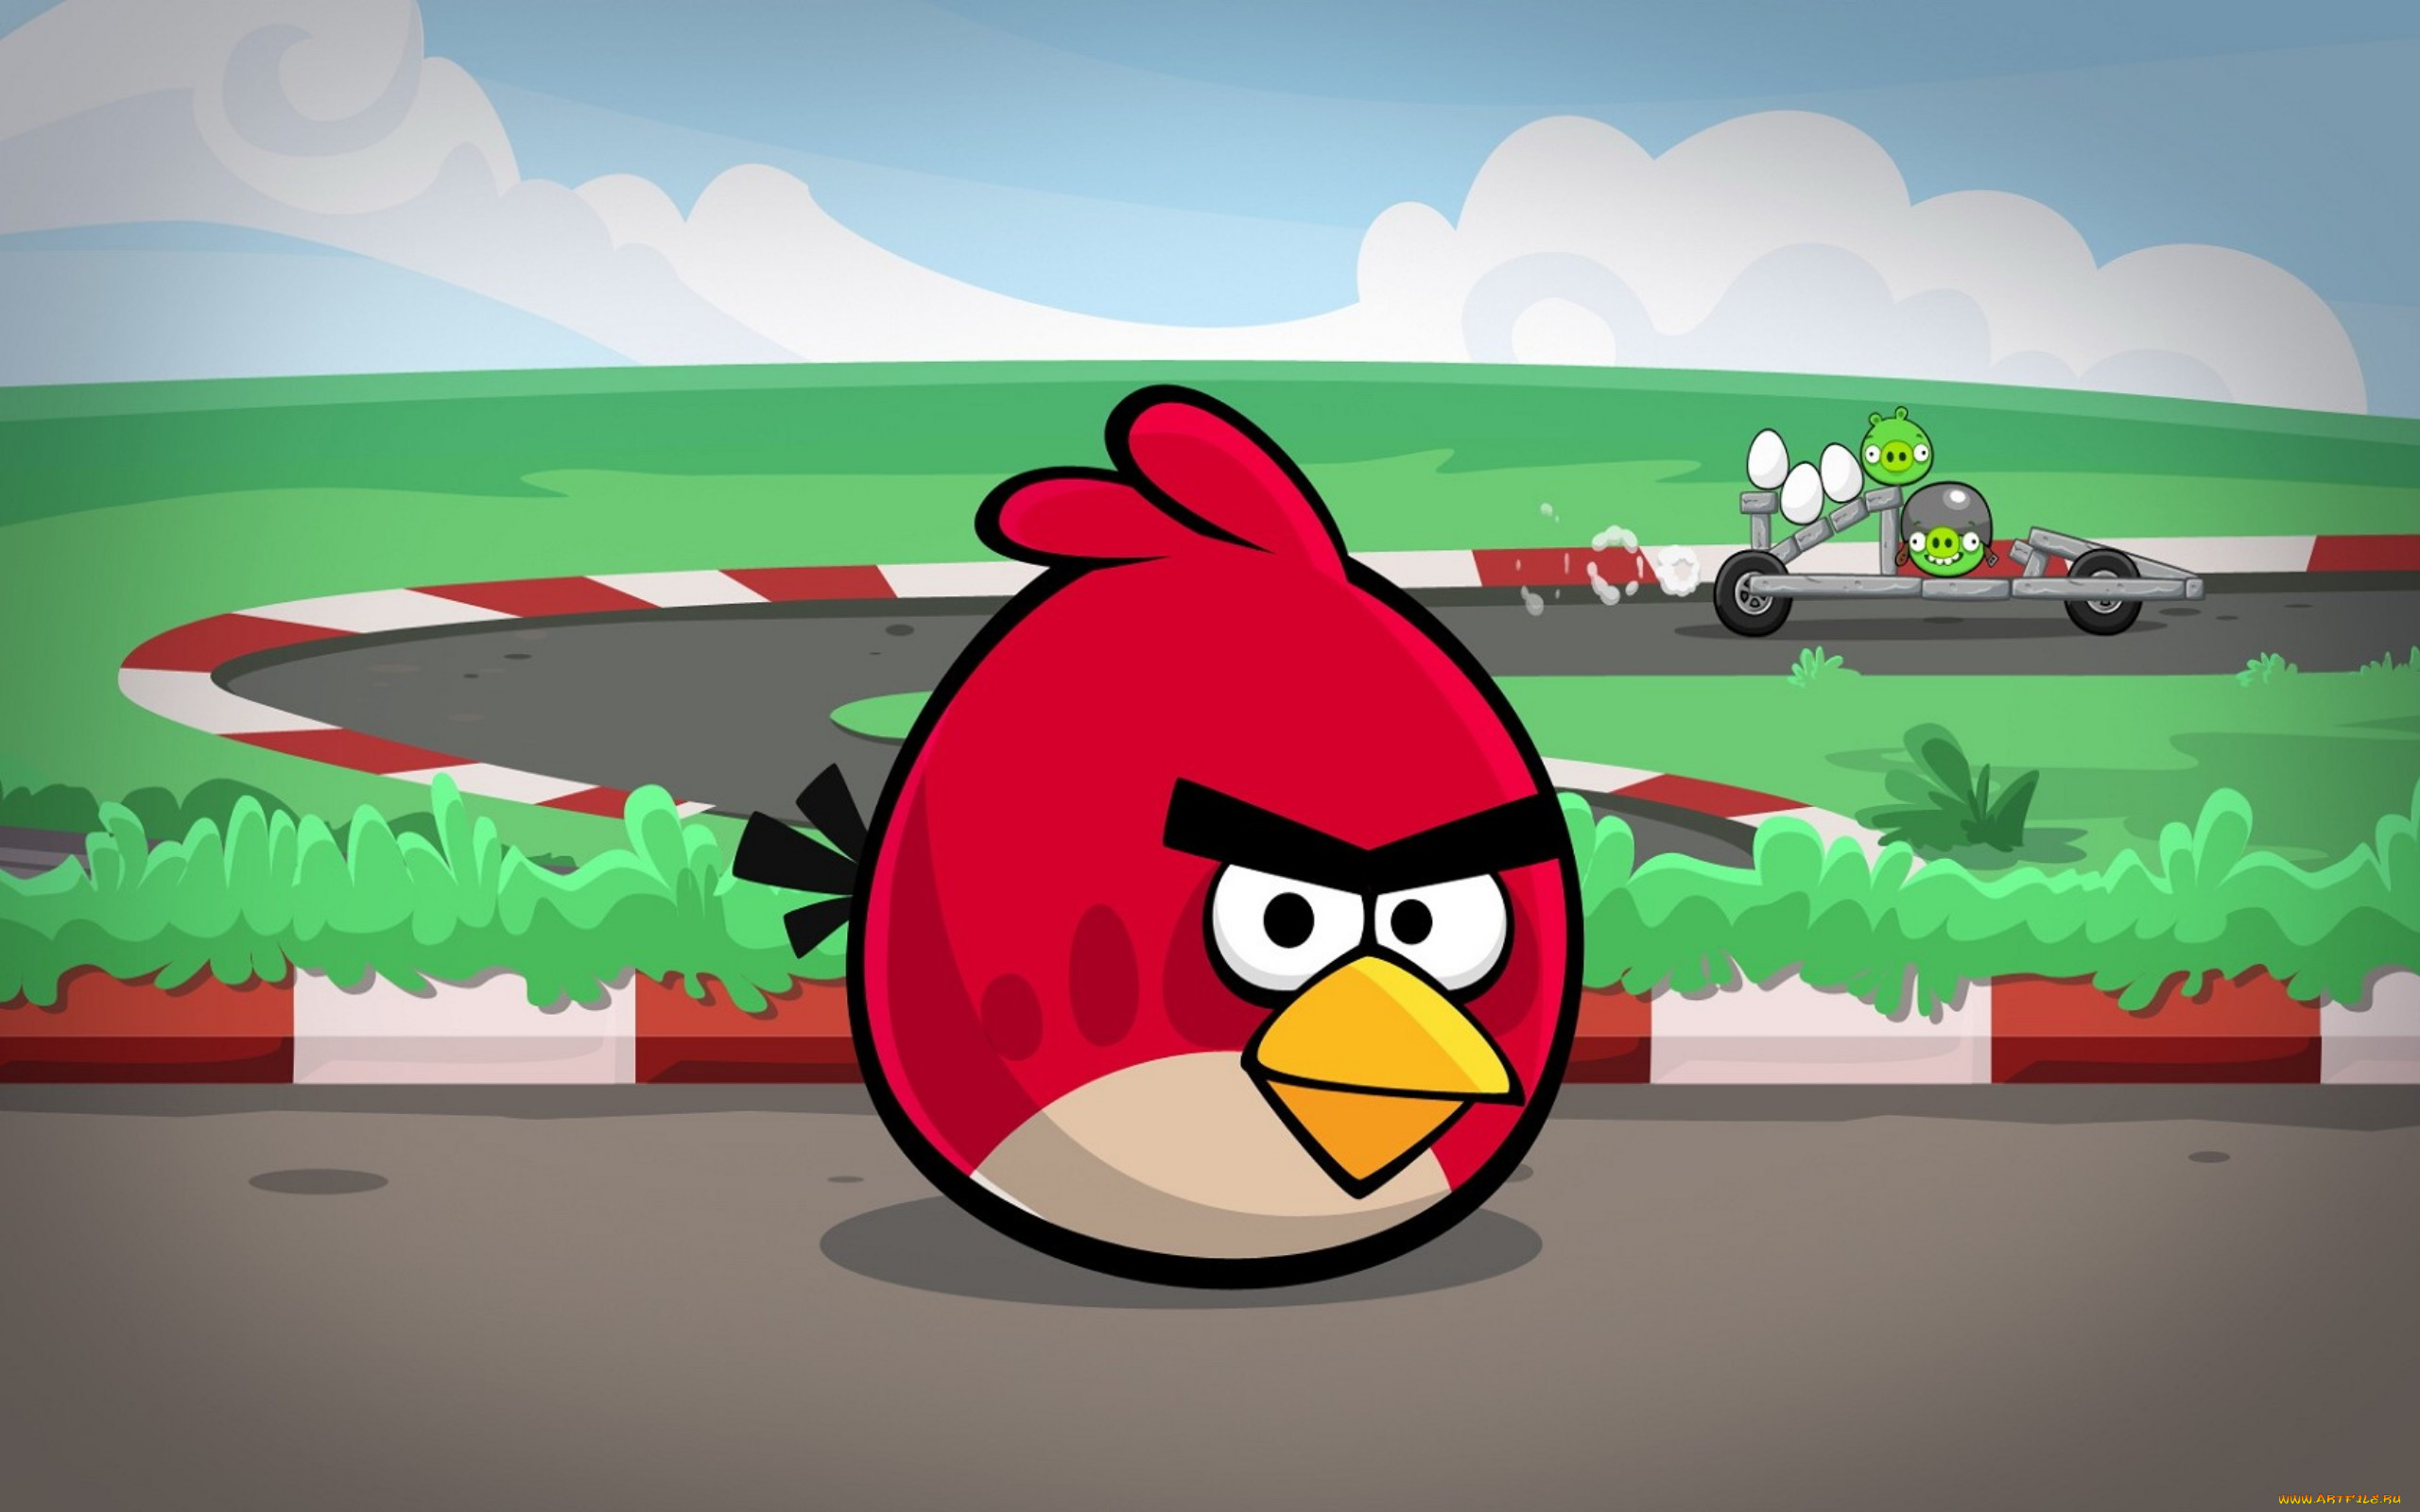 Бесплатный энгриберц. Ангрибёрдс злые птенчики. Игра Angry Birds Red. Энгри бердз бердз. Ангри берс 3.